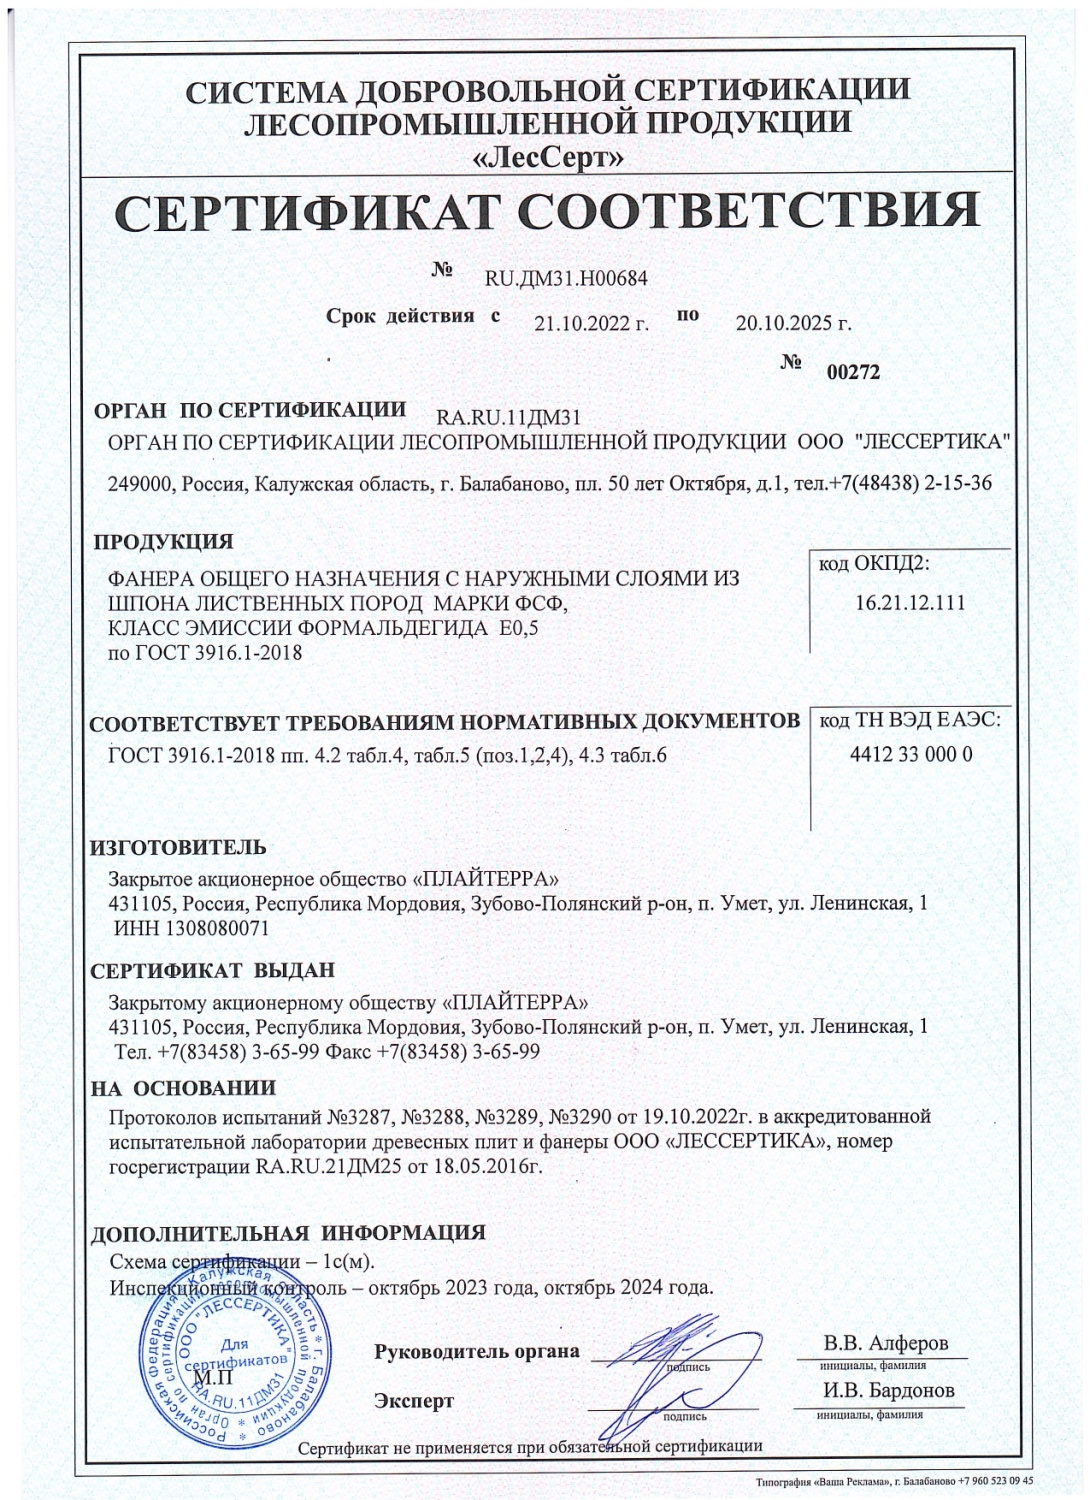 Сертификат соответствия ЗАО "Плайтерра"